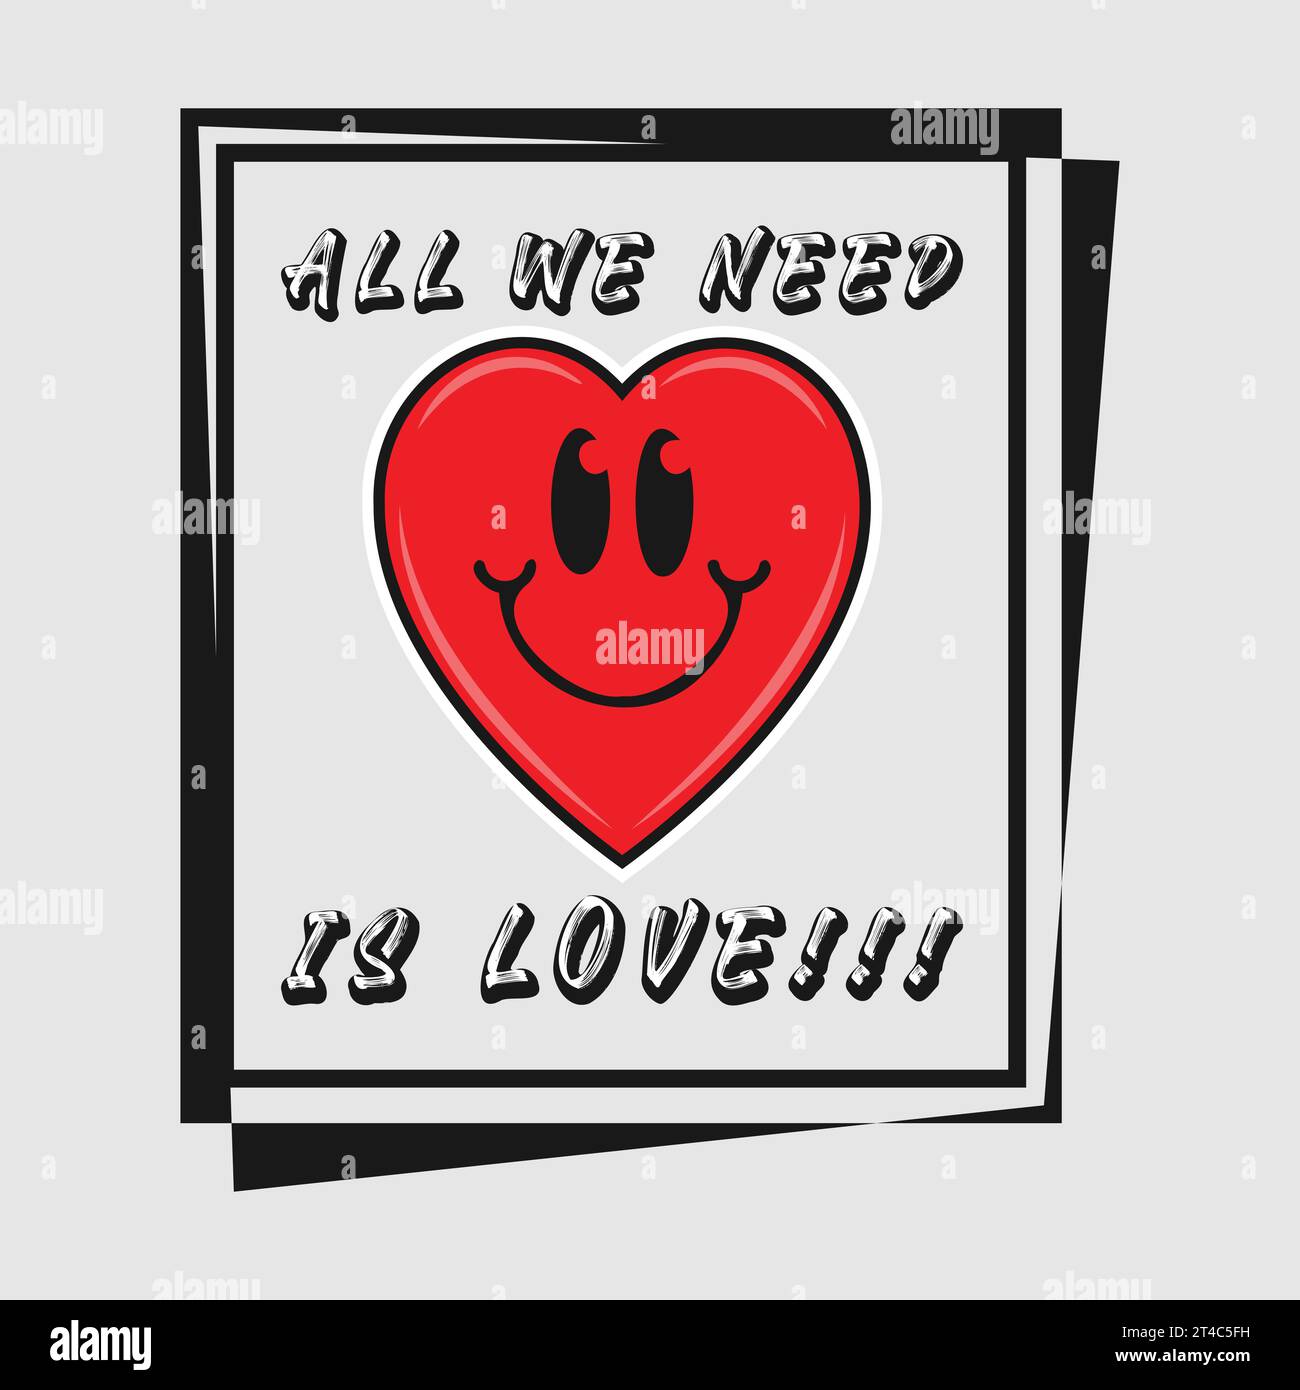 Dessin animé emoji de coeur avec tout ce dont nous avons besoin est phrase d'amour. Citations positives, vecteur de conception typographique. Illustration de Vecteur